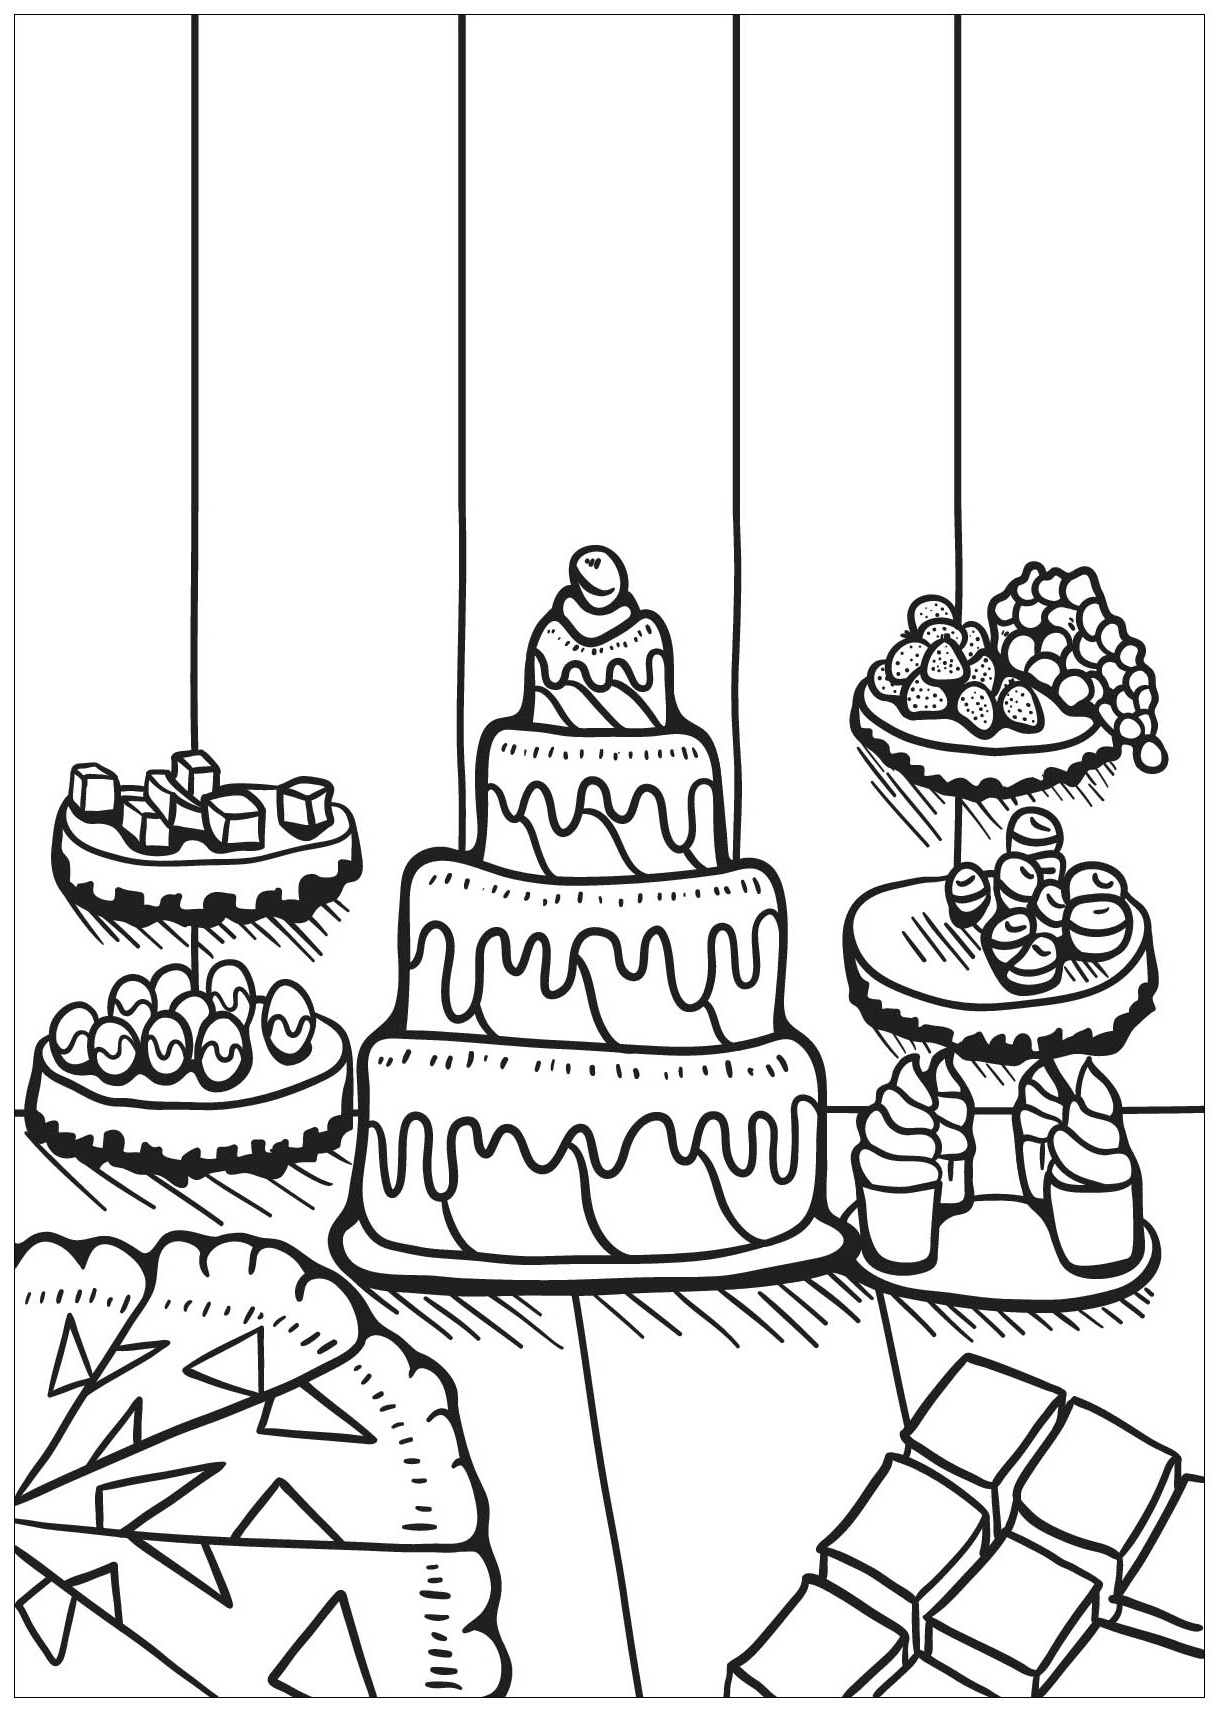 image=cupcakes et gateaux cupcake 2 1